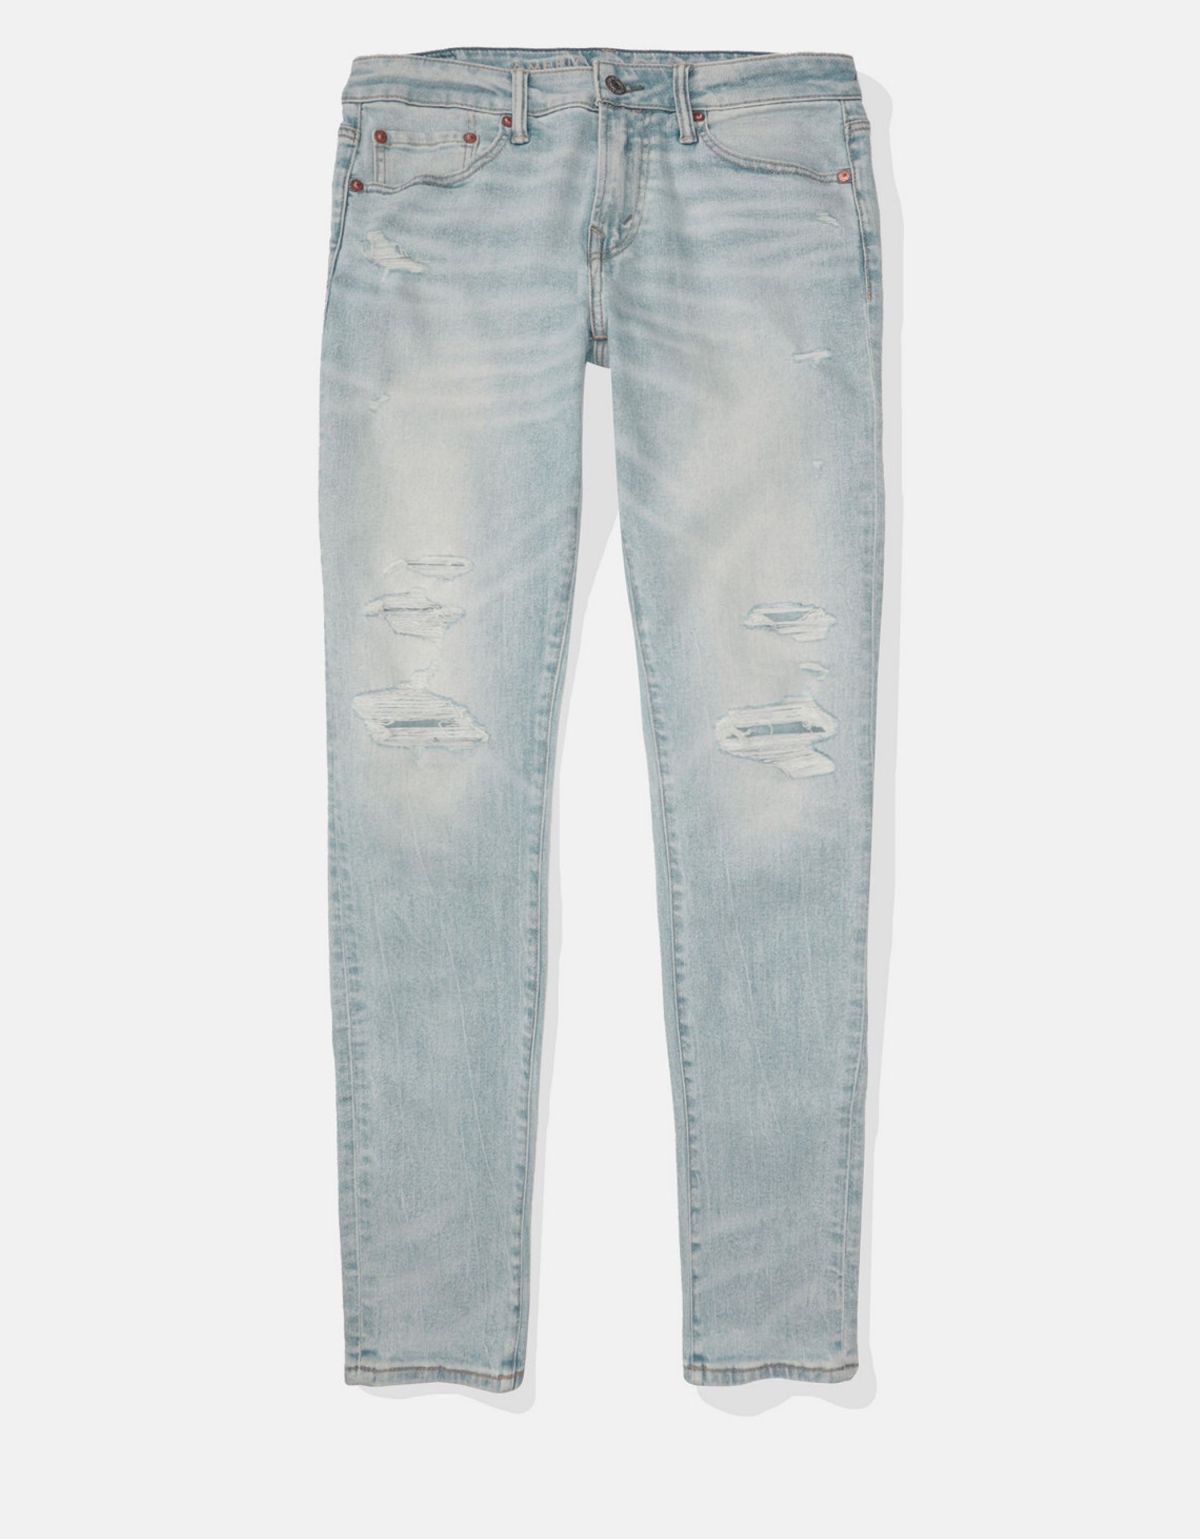  מכנסי ג'ינס עם שיפשופים דקורטיביים של AMERICAN EAGLE